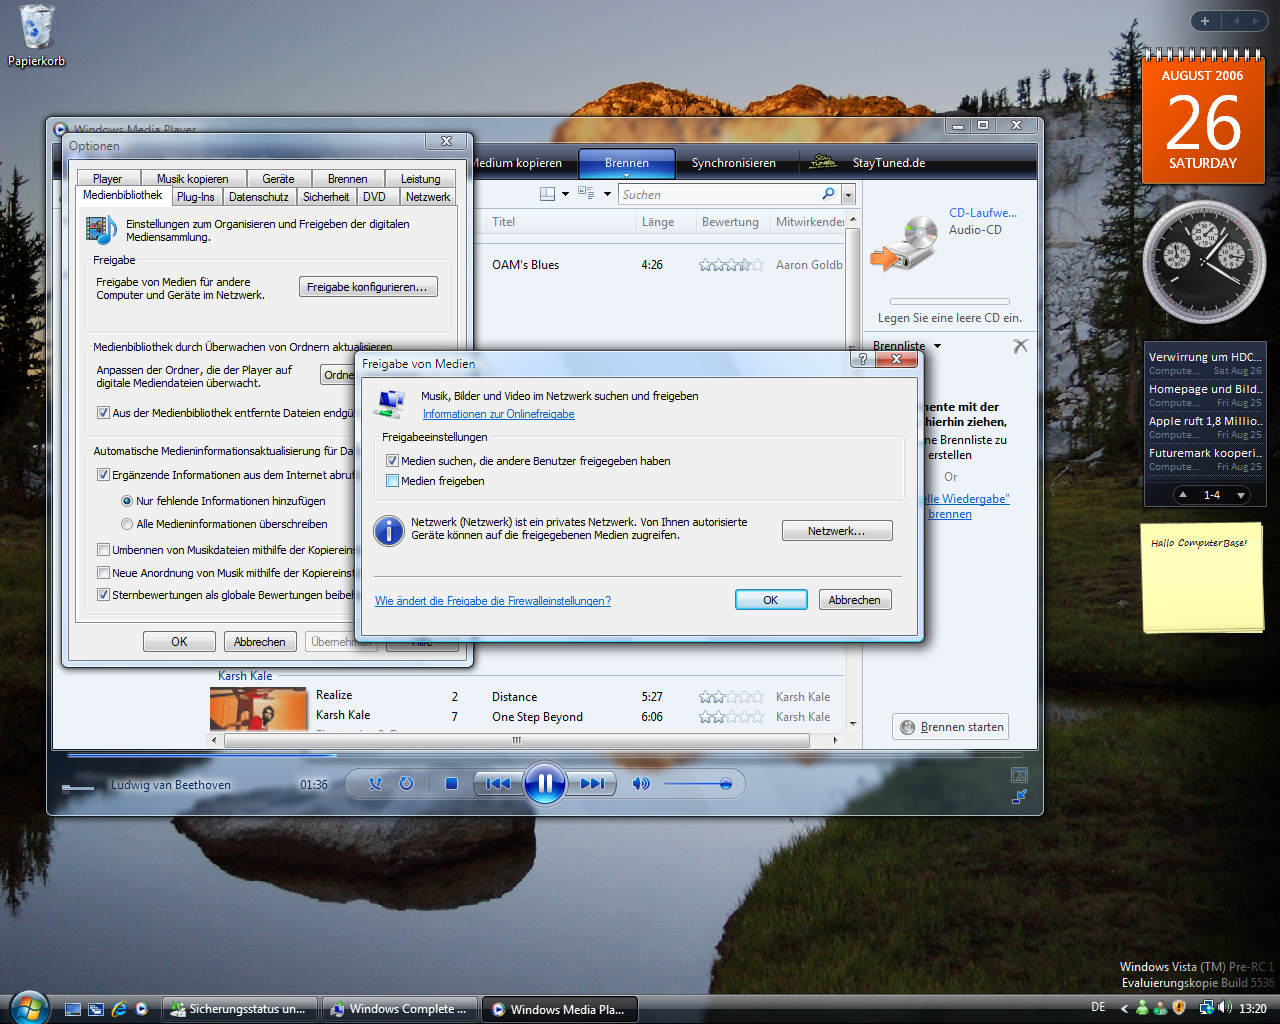 Windows Vista Build 5536 - Media player 11 Musik im Netzwerk freigeben